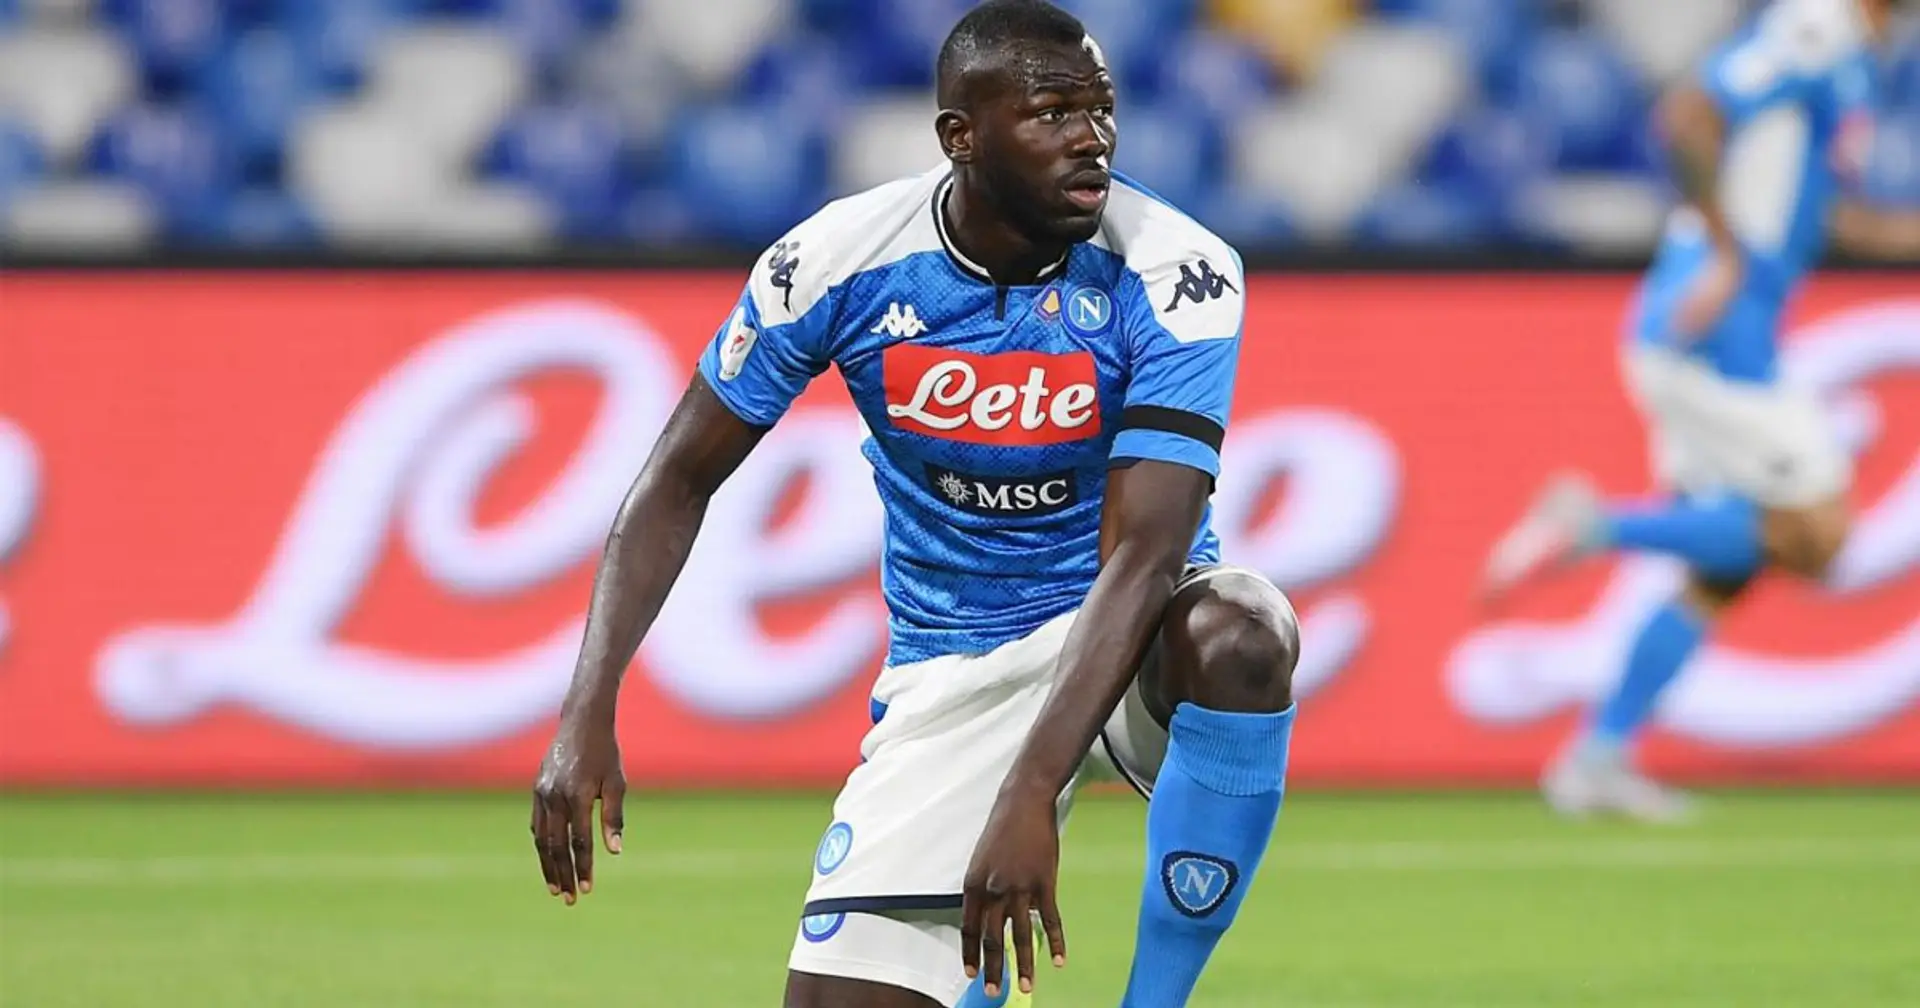 Il Napoli attende il City per Koulibaly: secondo Sky Sport, sono due i nomi al vaglio per sostituire il senegalese